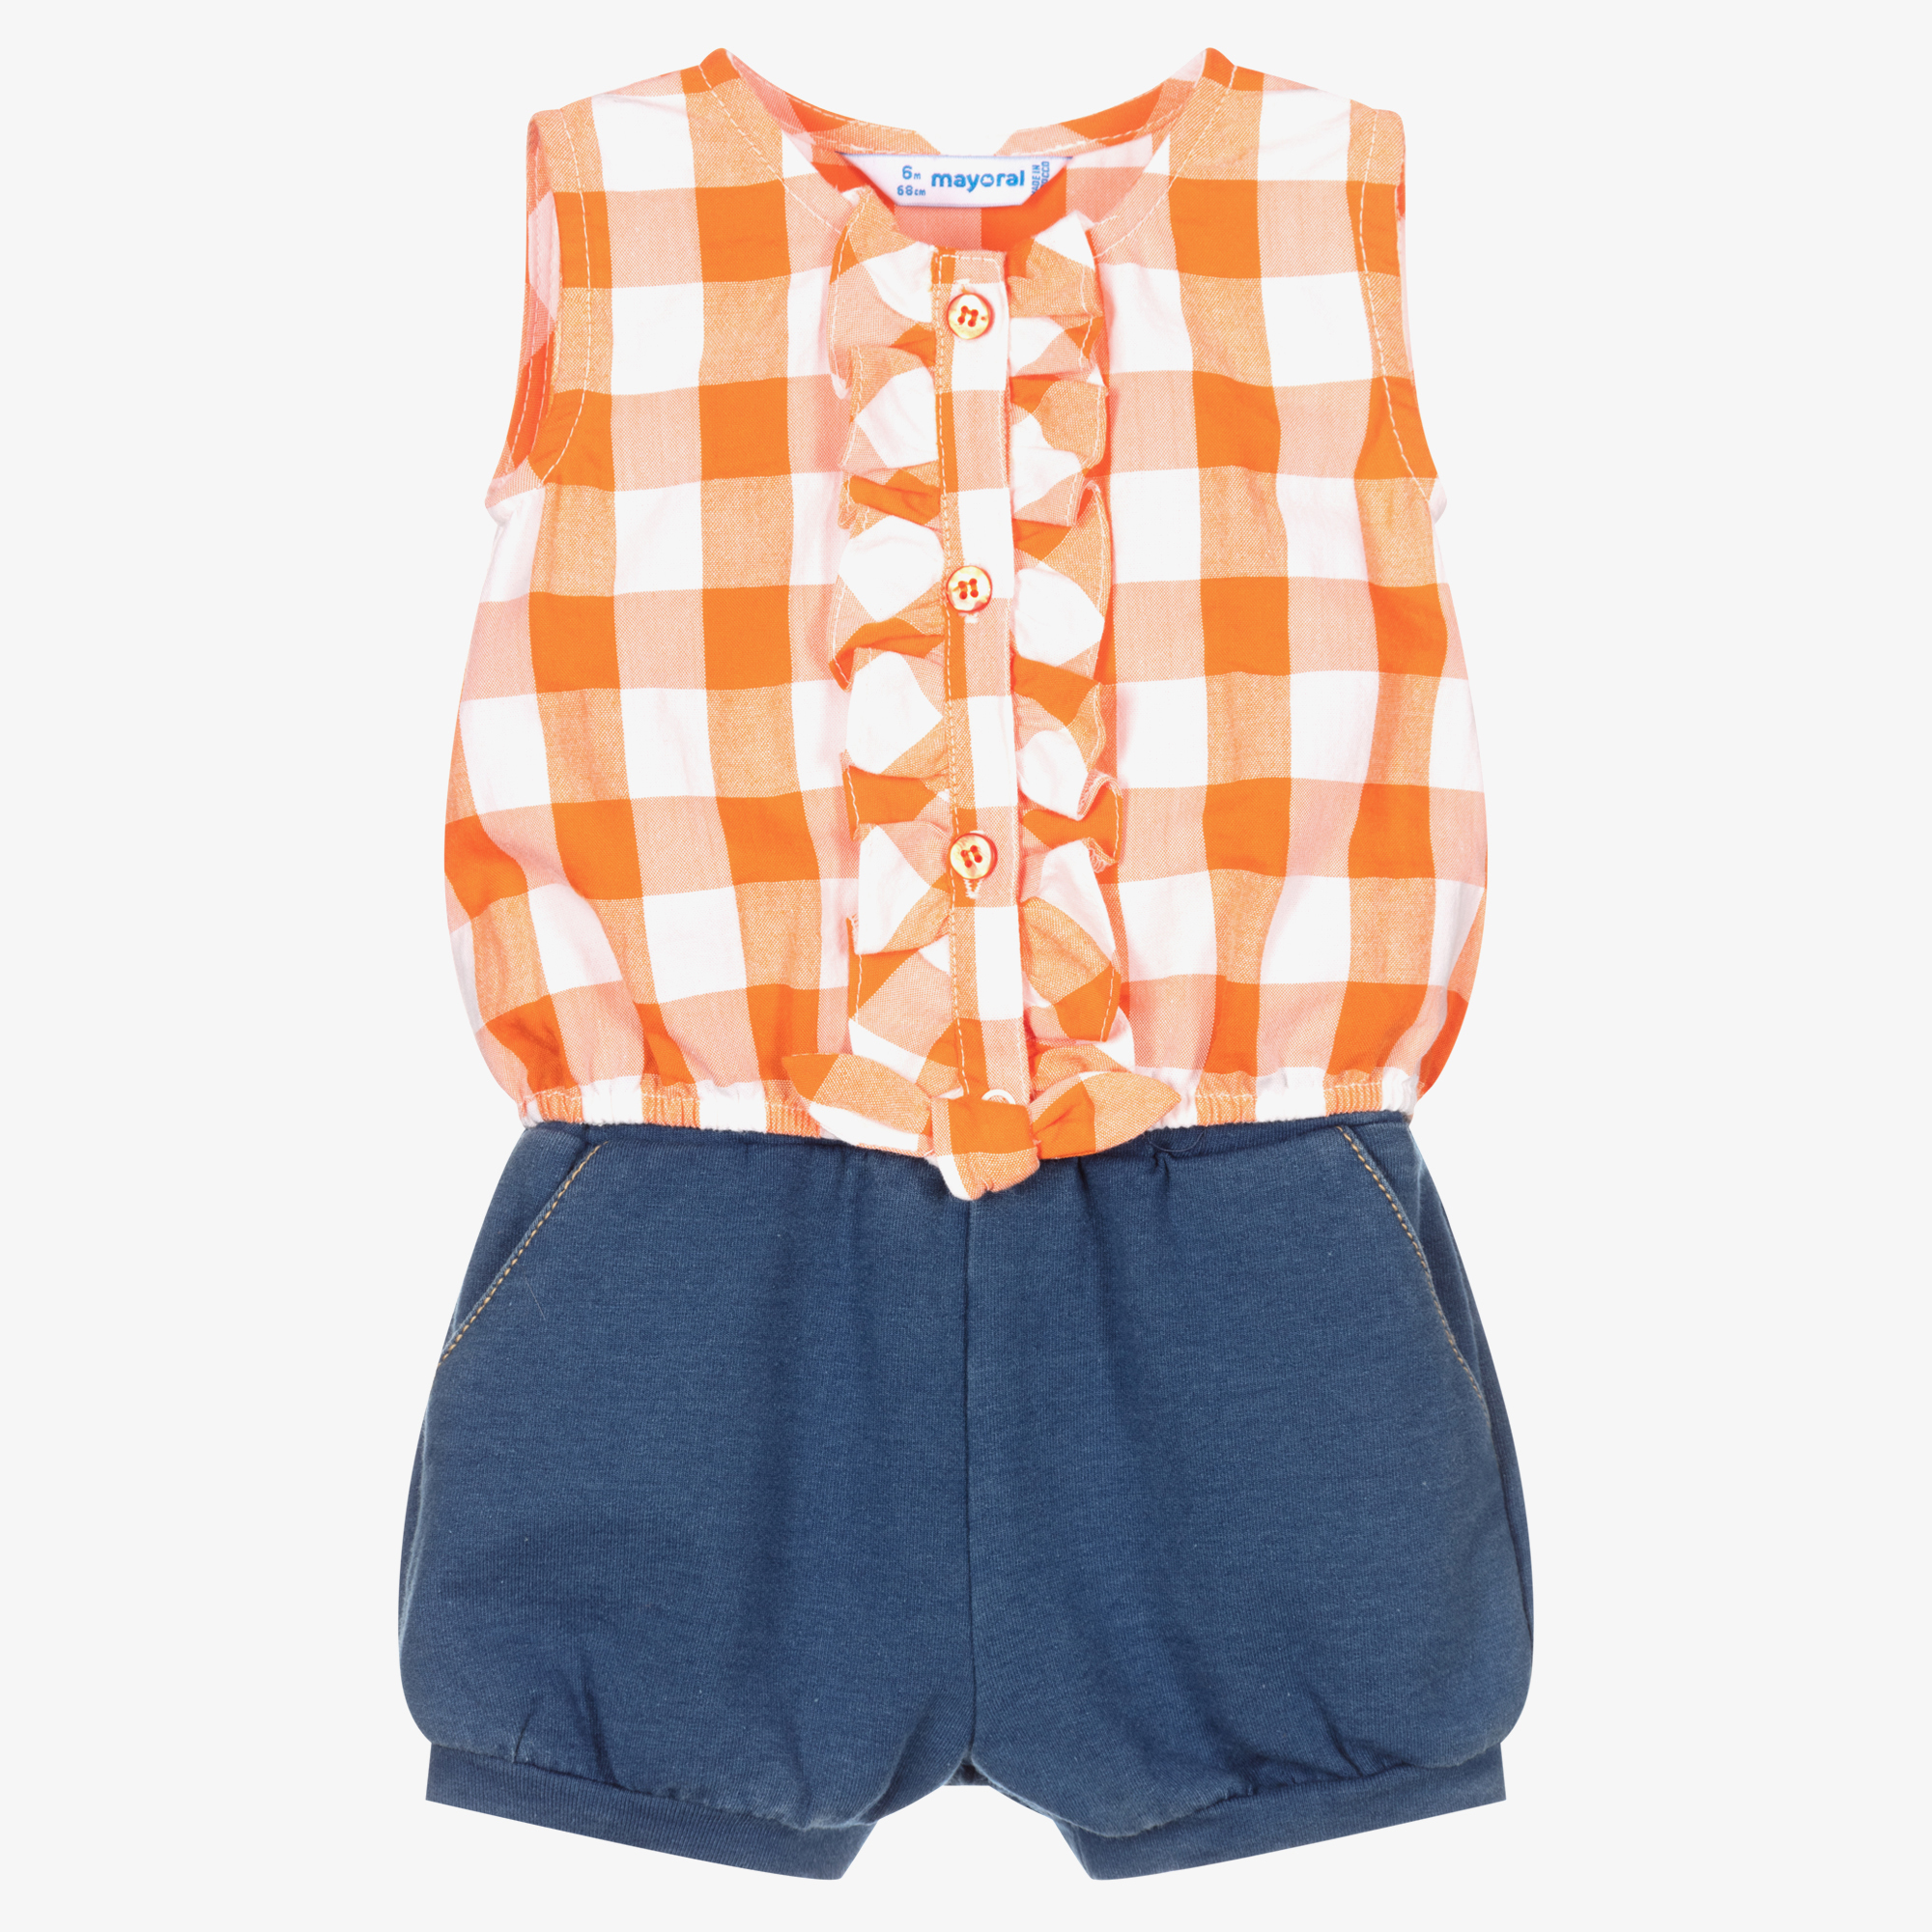 Mayoral - Girls Orange & Blue Shorts Set | Outlet